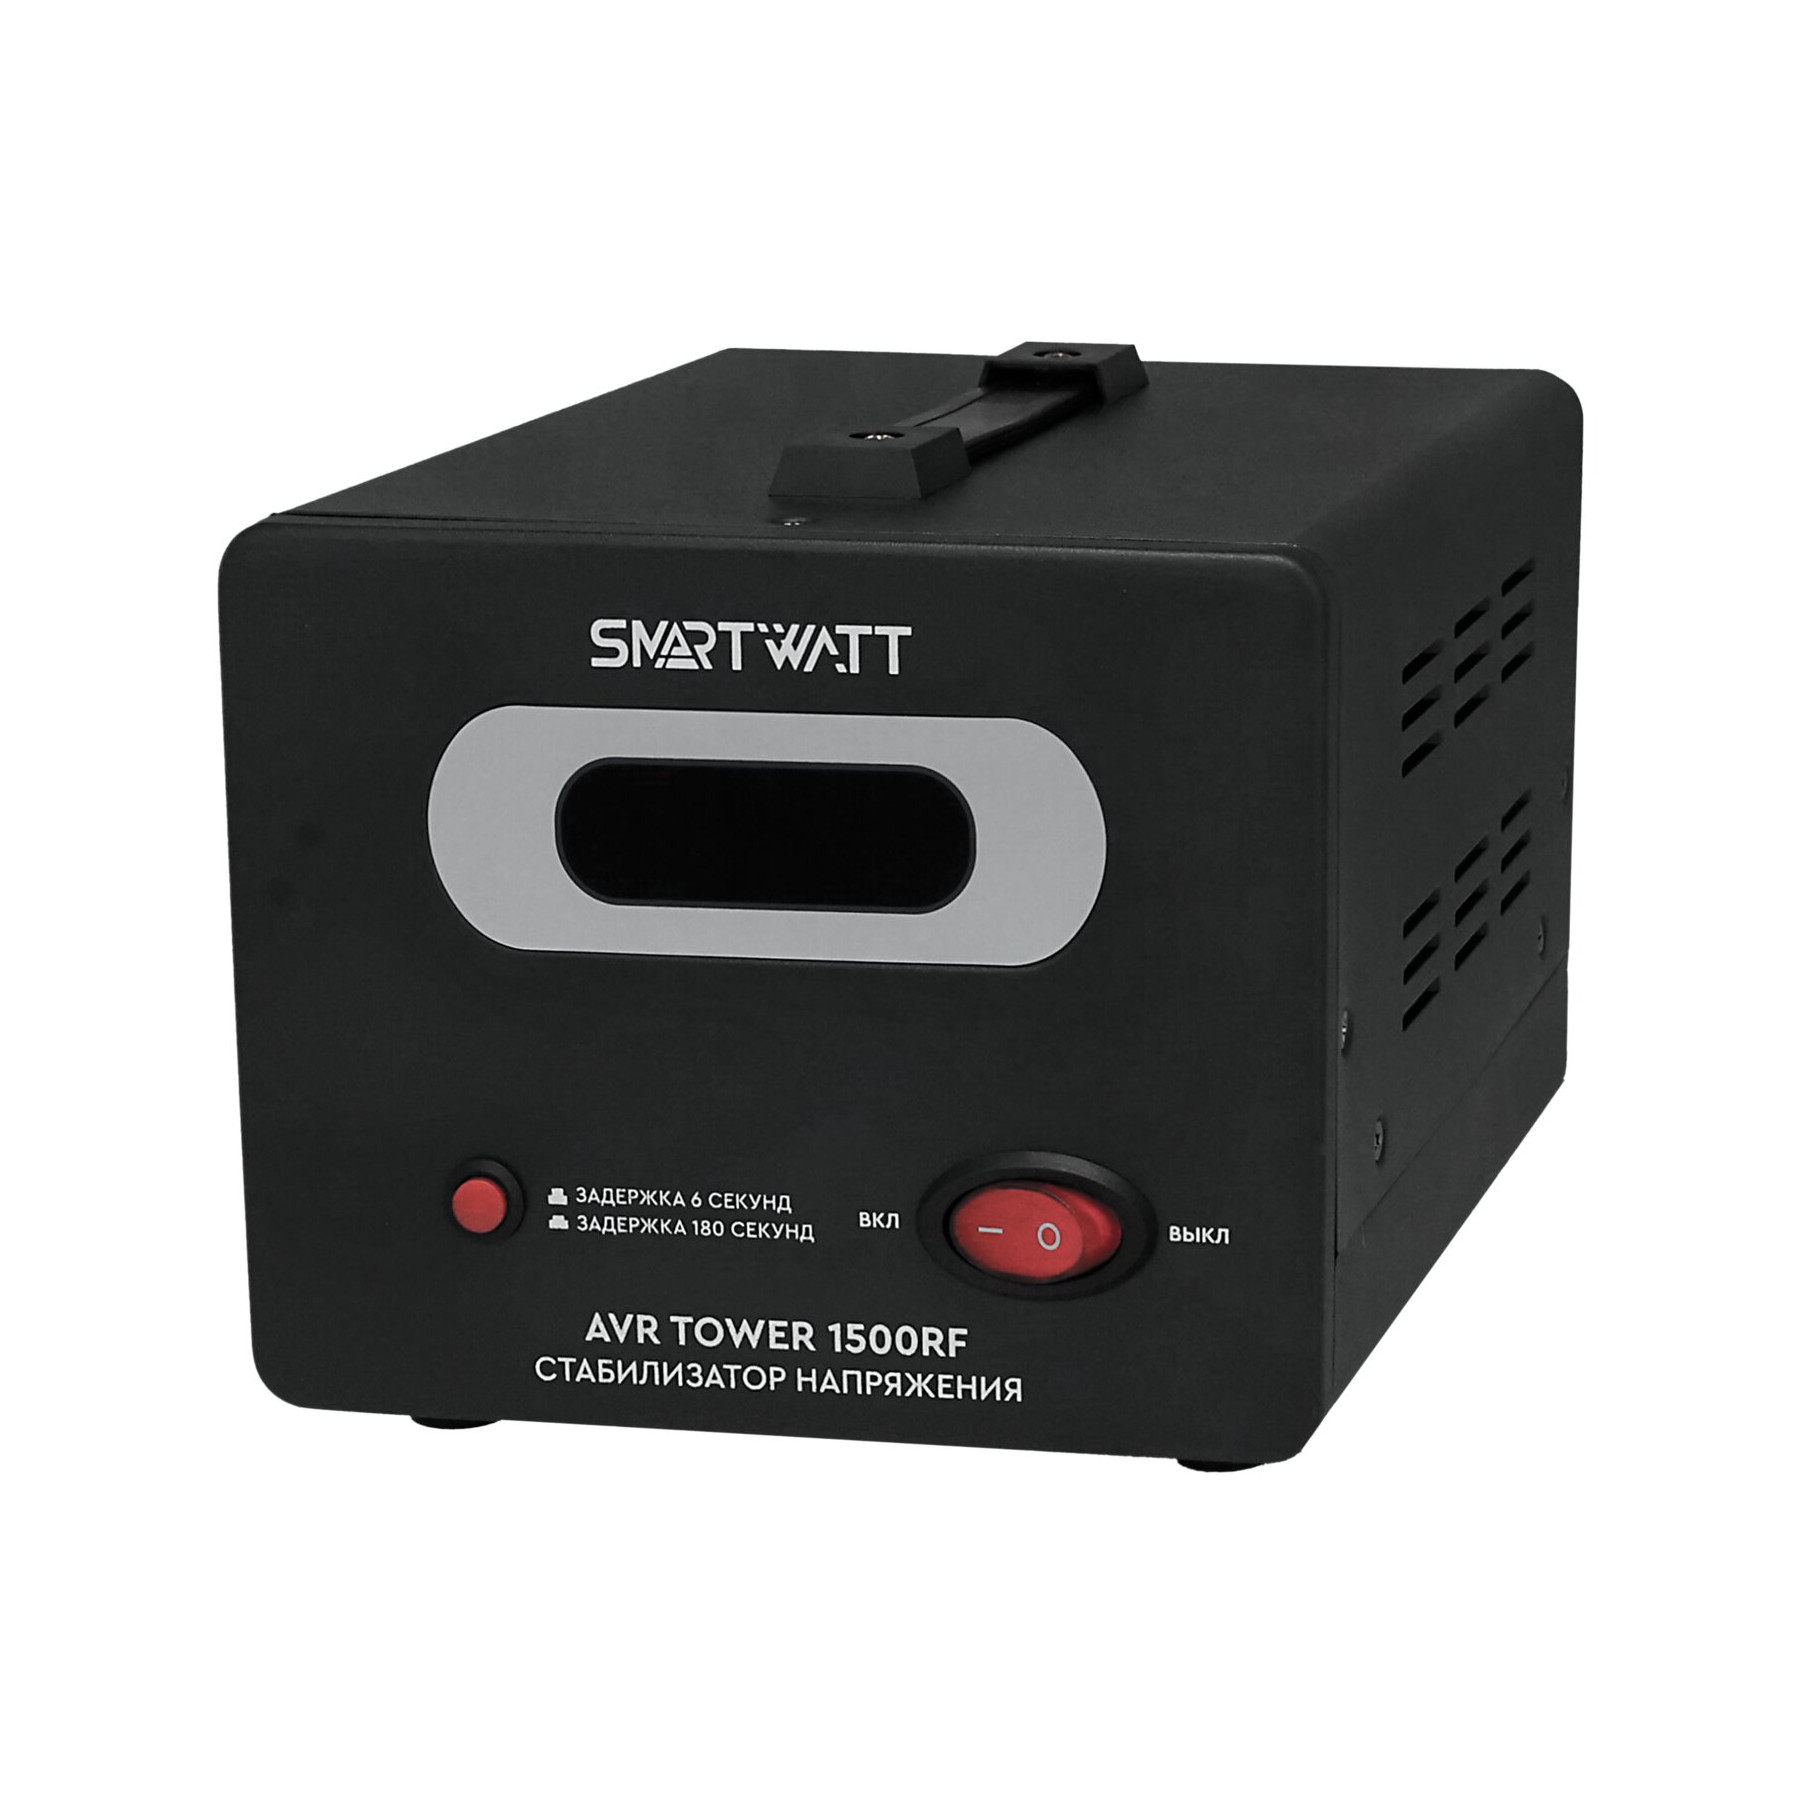 Стабилизатор напряжения SMARTWATT AVR TOWER 1500RF, 1500 VA, клеммная колодка, черный (4512020370004) - фото 1